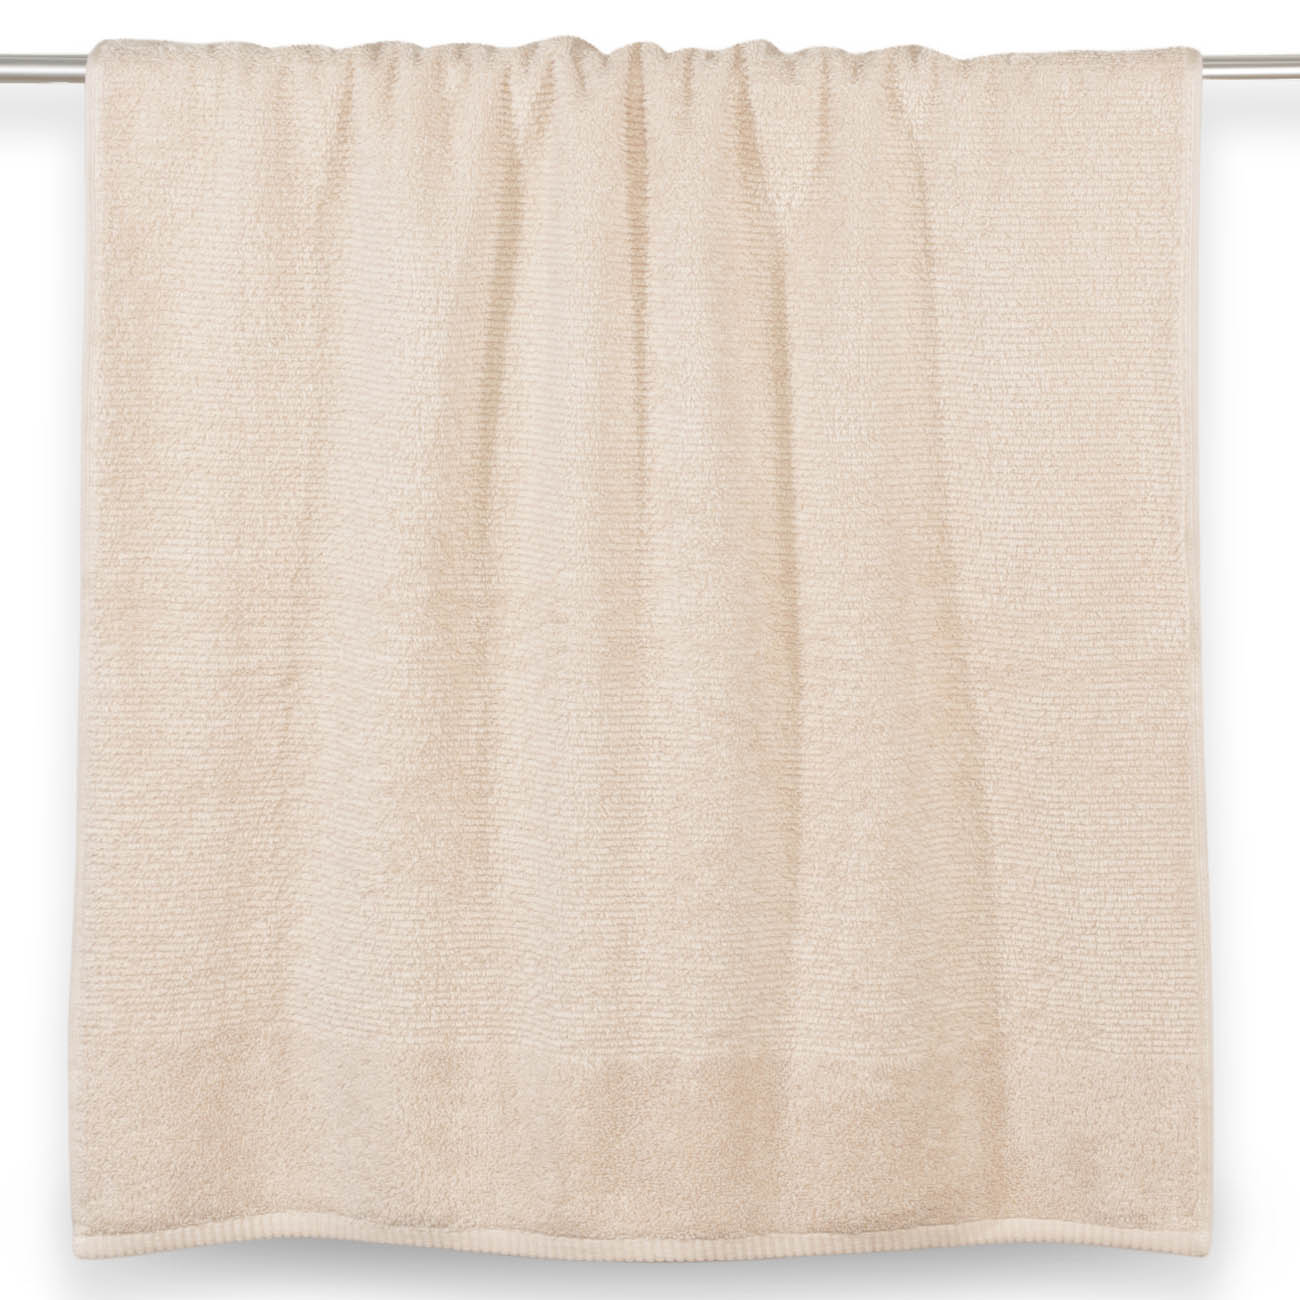 Towel, 70x140 cm, cotton, beige, Terry cotton изображение № 2